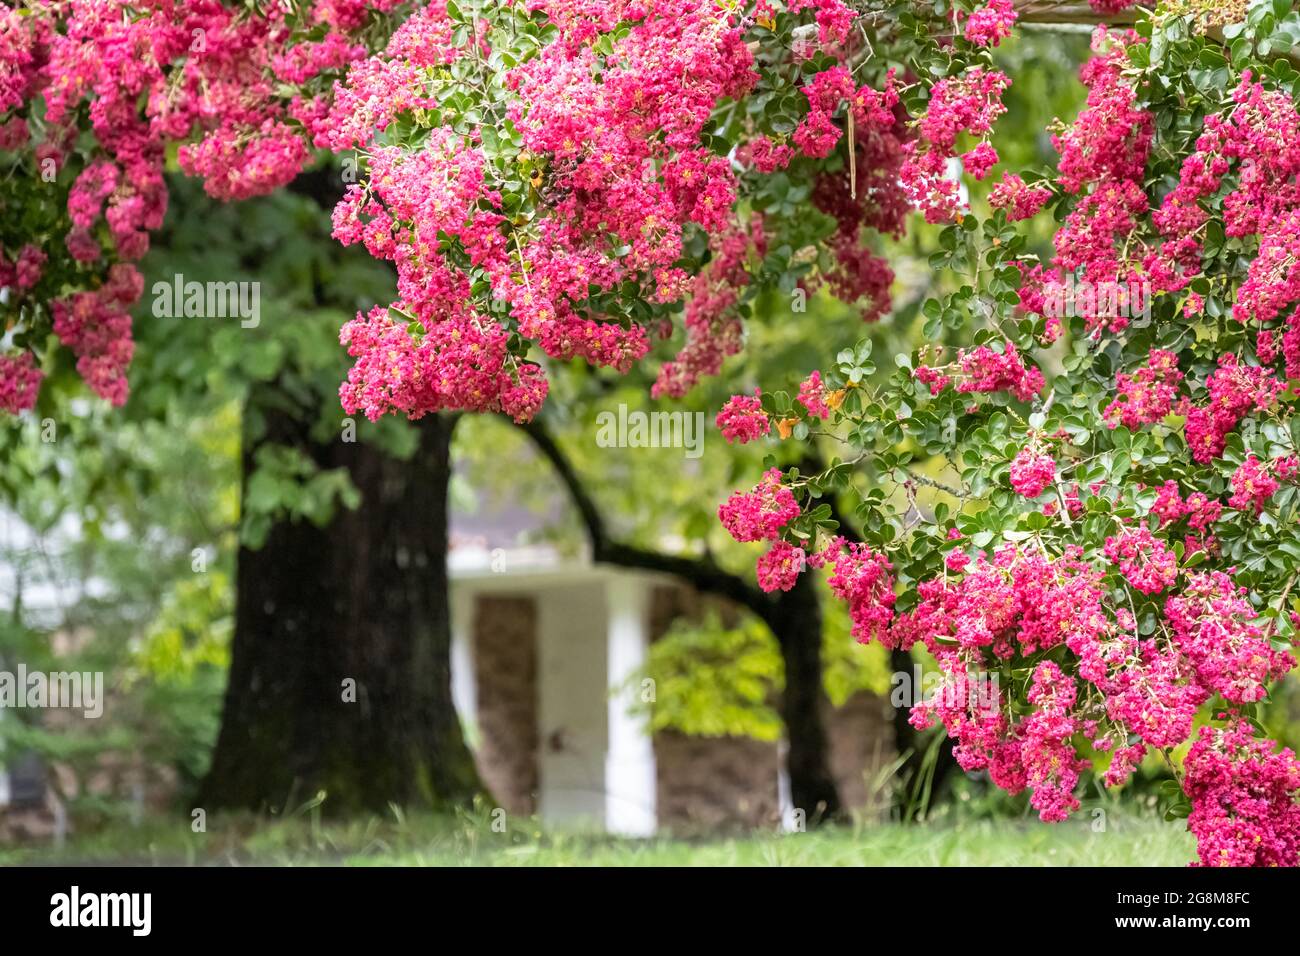 Belle fleur de myrte de colza rose (Lagerstroemia) dans la cour avant d'une maison de la région de Metro Atlanta. (ÉTATS-UNIS) Banque D'Images